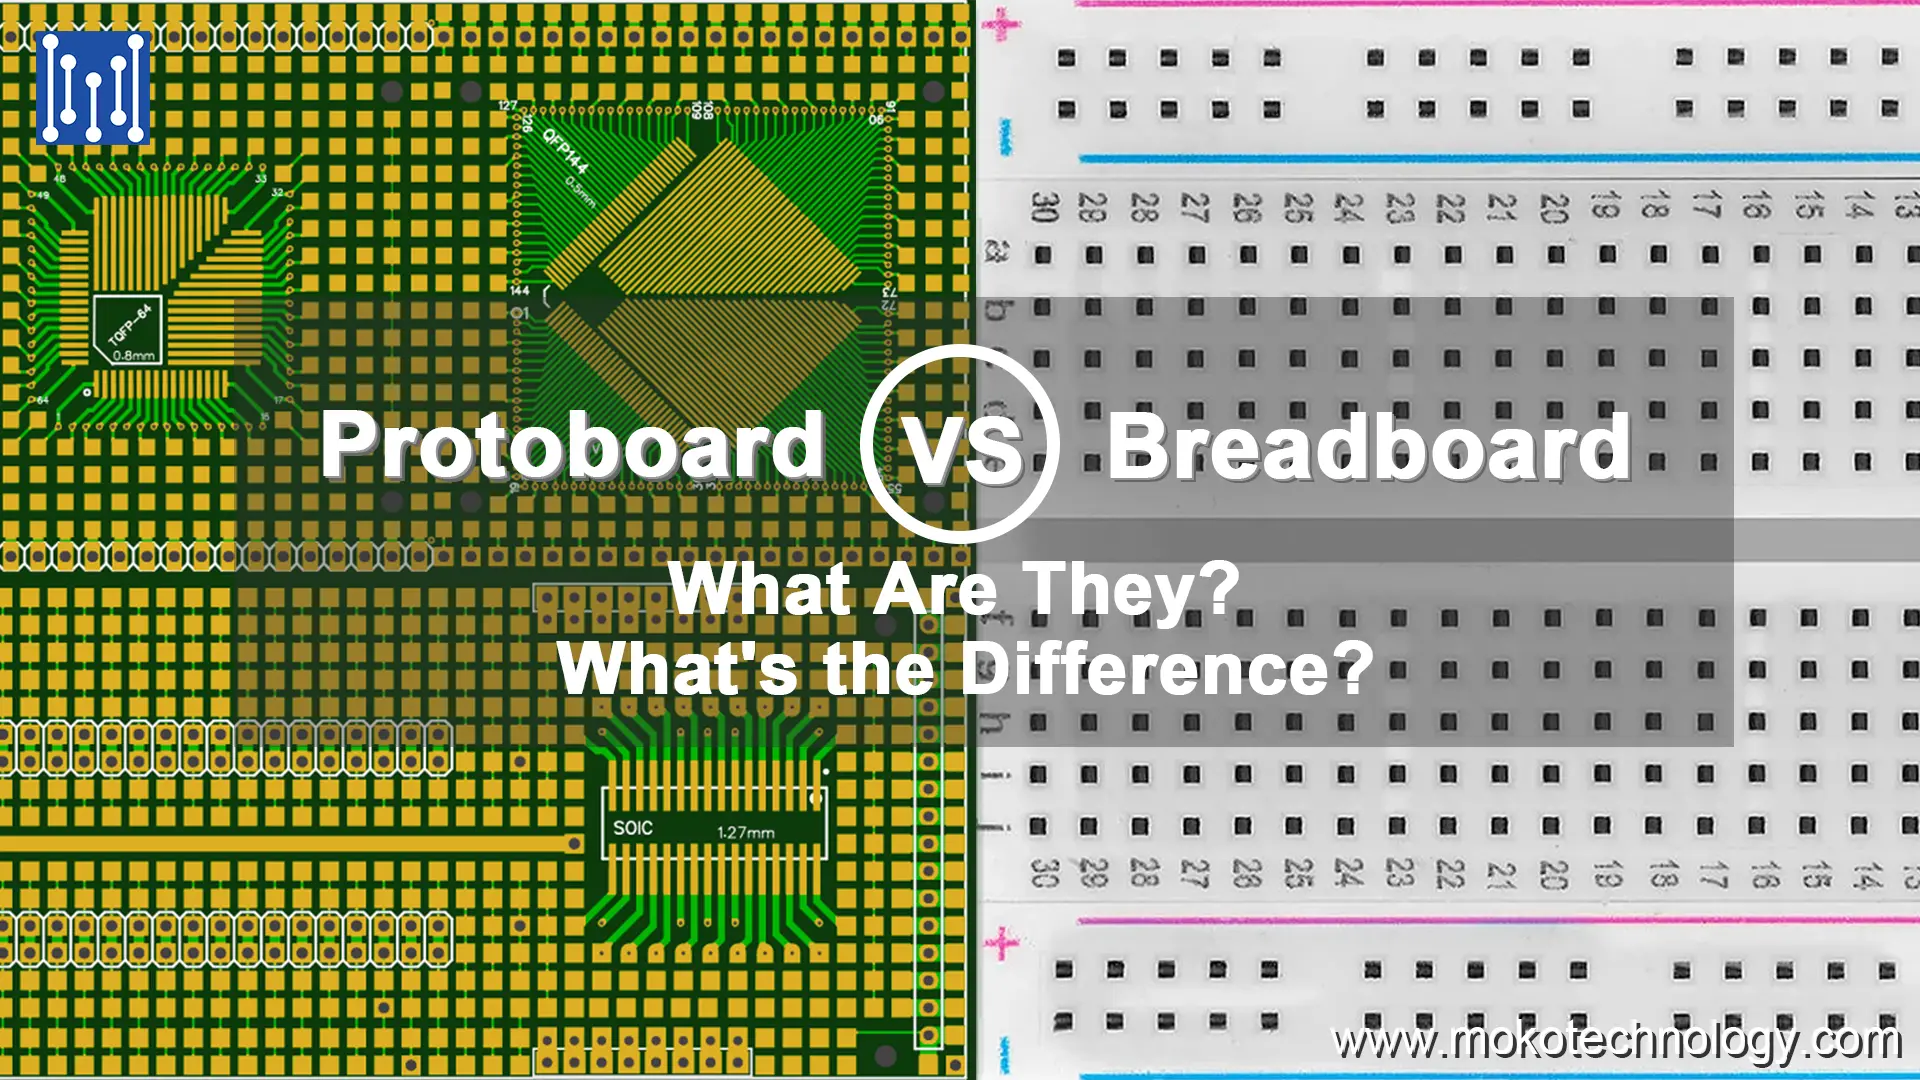 Protoboard vs. Breadboard